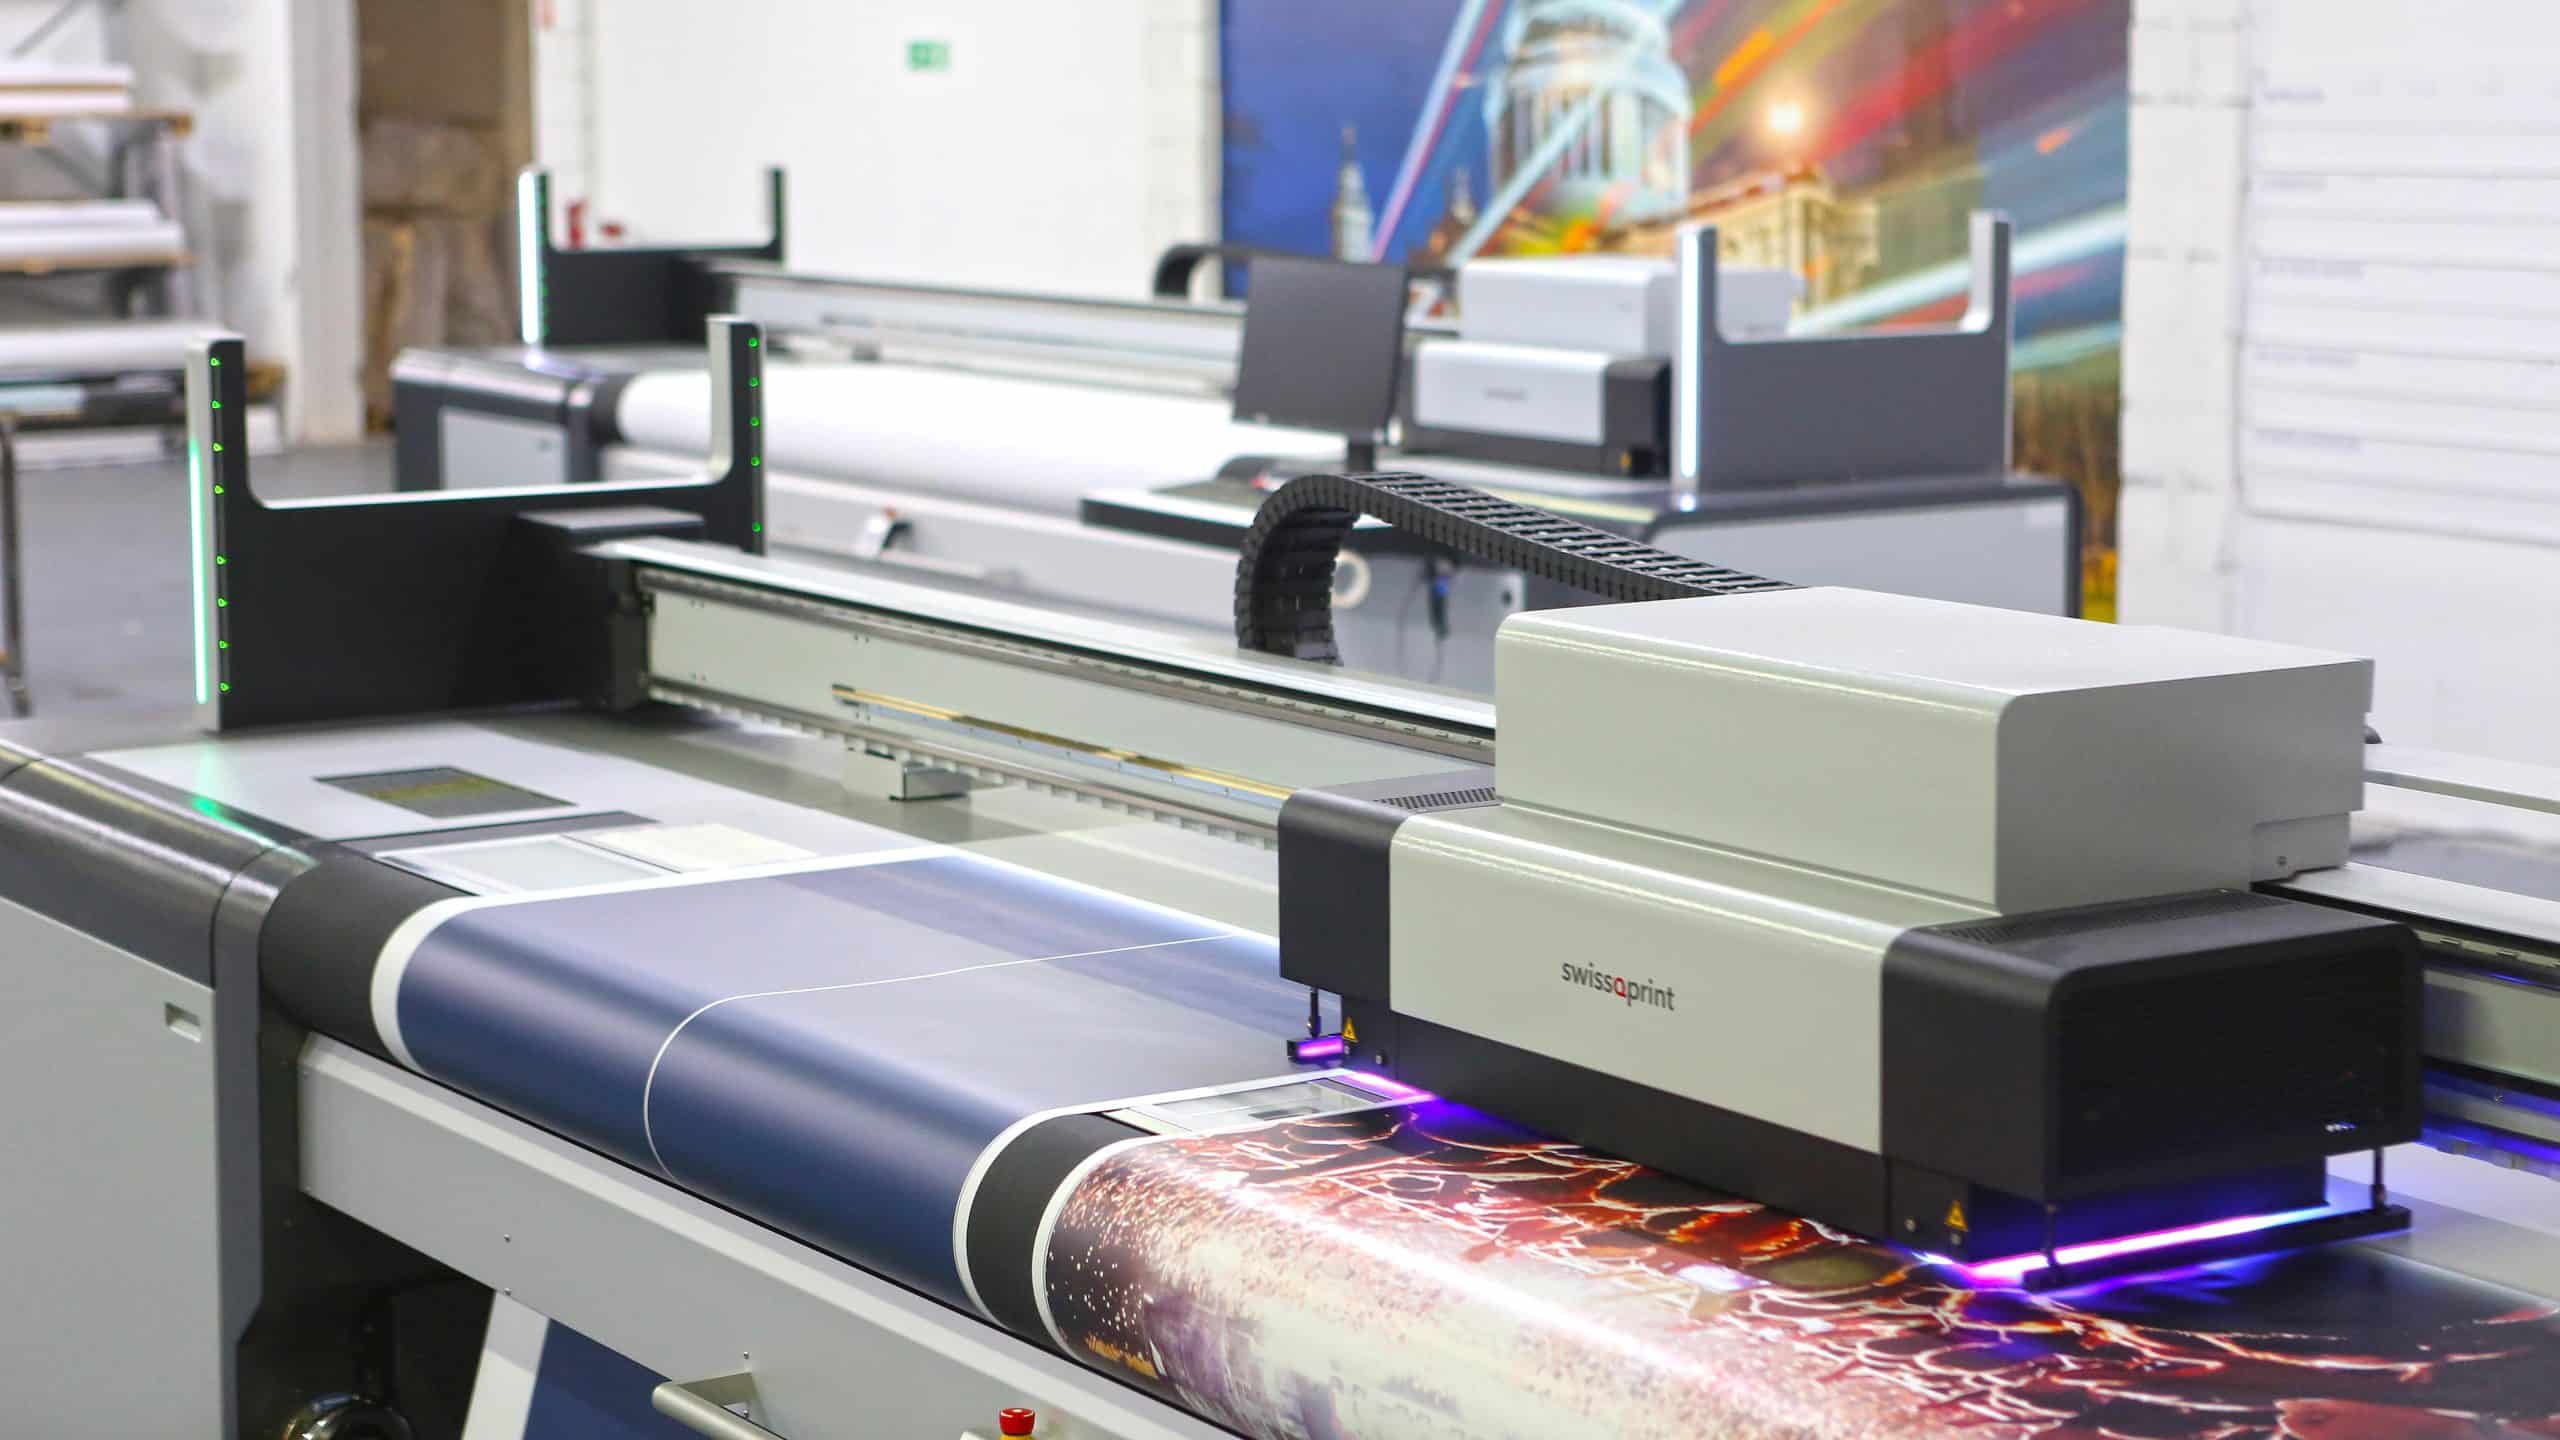 Impresora digital de gran formato imprimiendo en modo eco.